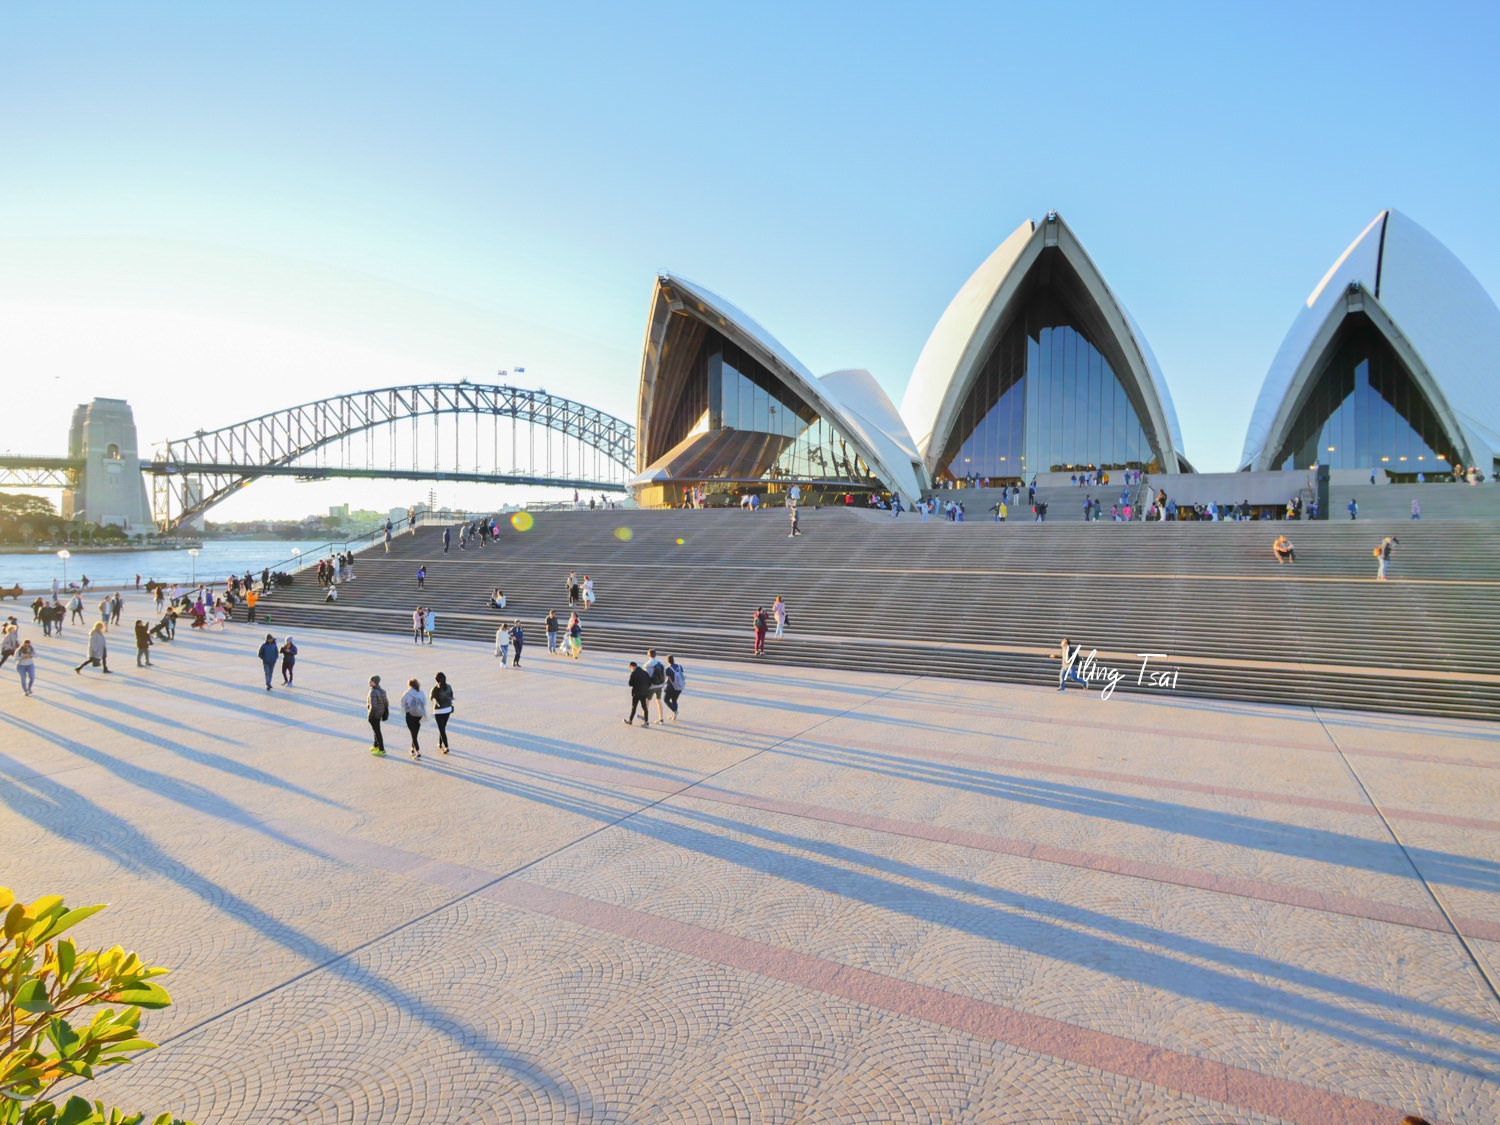 澳洲雪梨歌劇院 Sydney Opera House 內部導覽行程、歌劇院拍照攻略